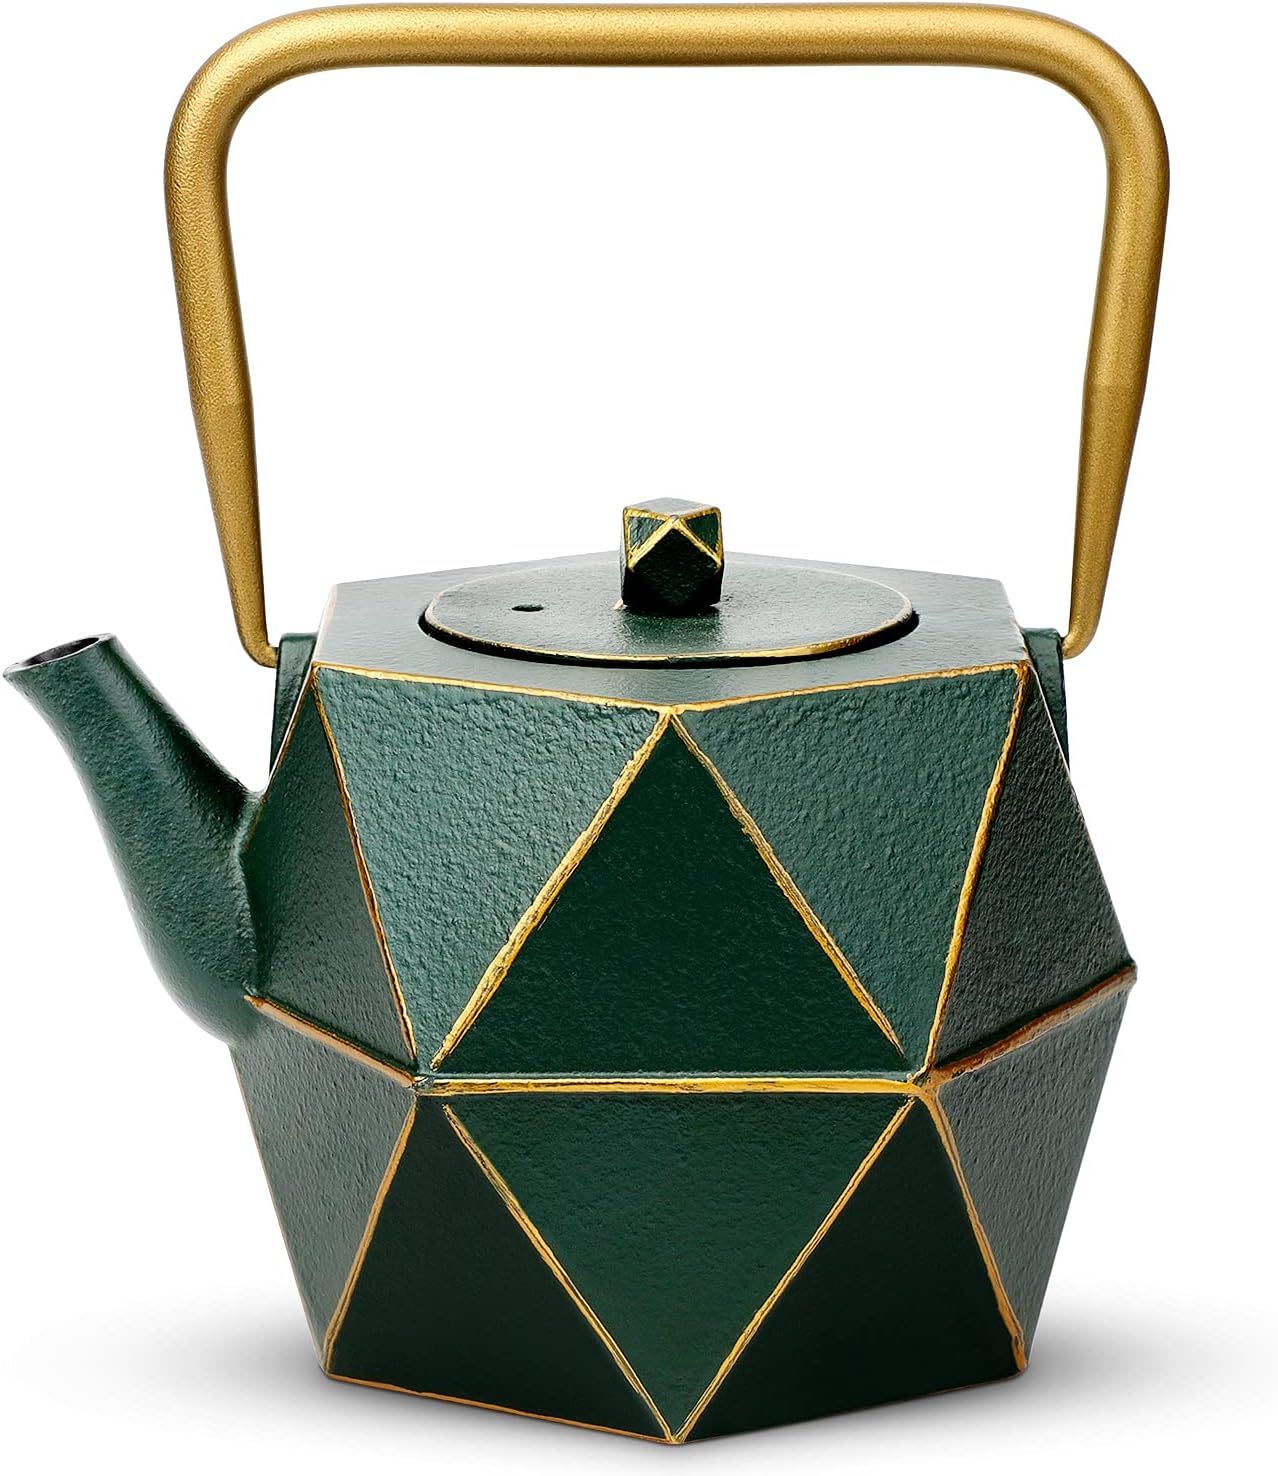 Toptier Cast Iron Teapot, Stovetop Safe Japanese Cast Iron Tea Kettle, Diamond Design Tea Pot wit... | Amazon (US)